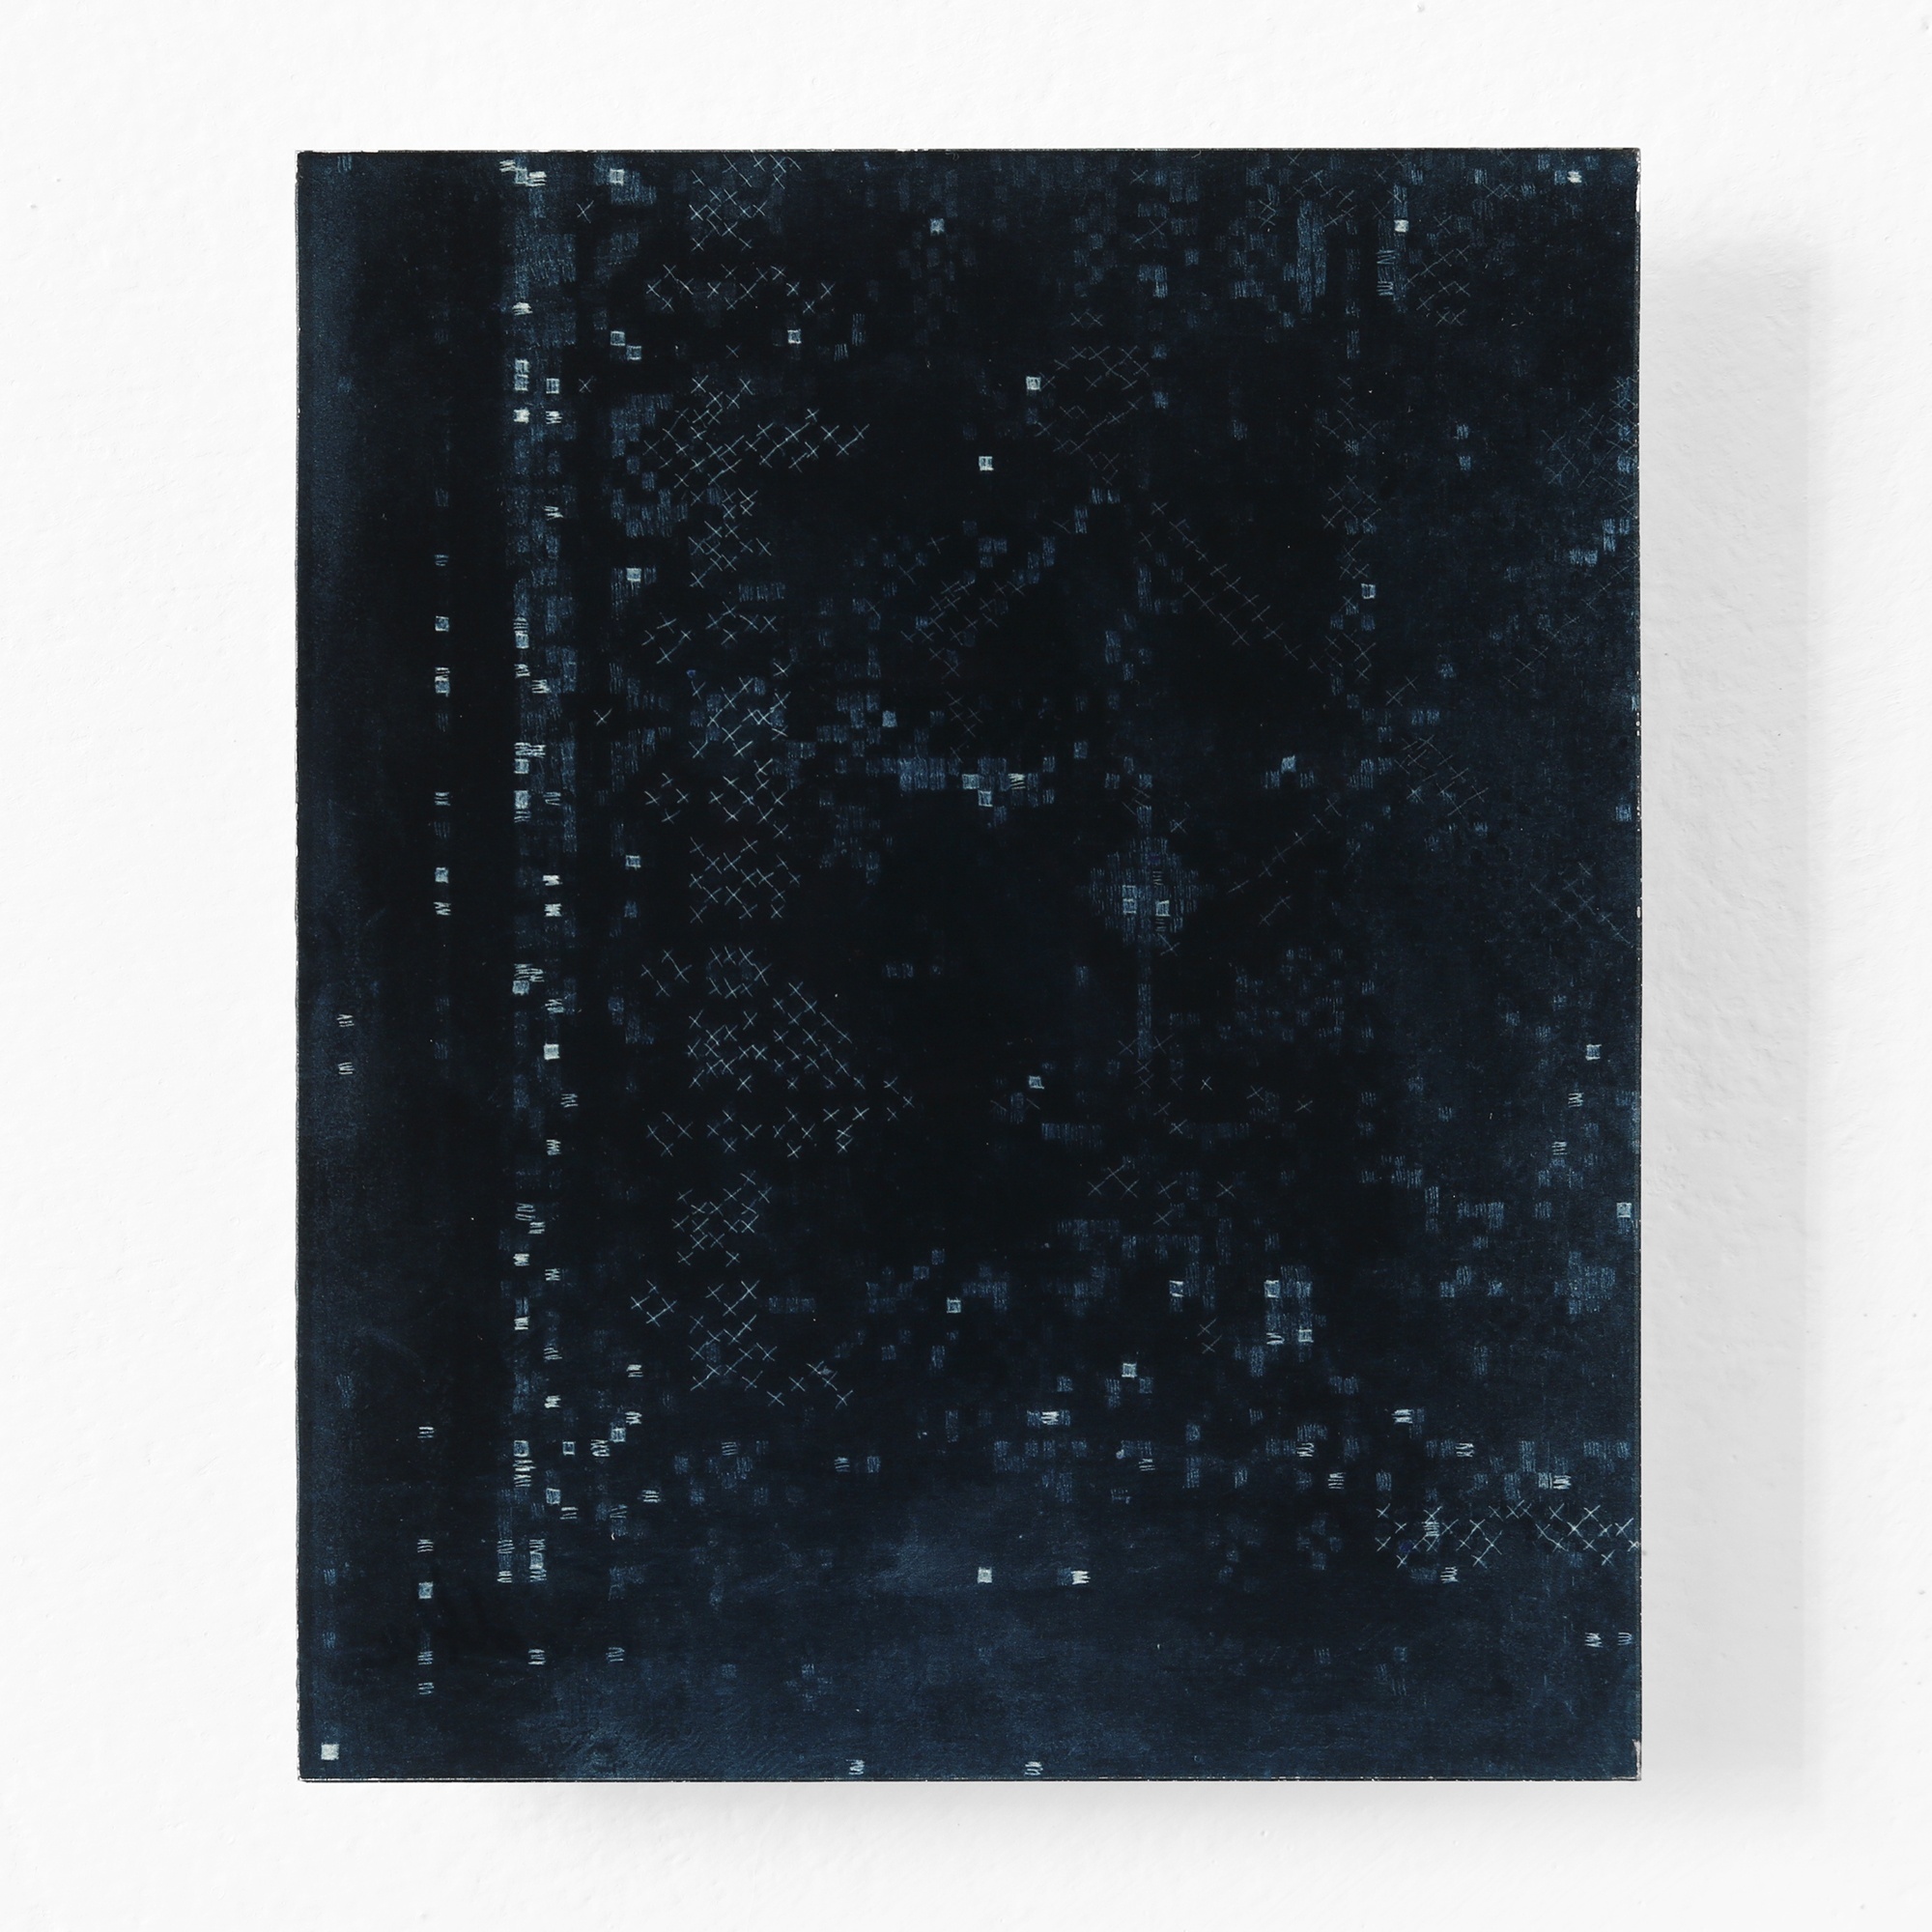 KÄTHE V, 2018 - UV-print on glass, 5.9 x 4.8 in. / 15 x 12,3 cm 